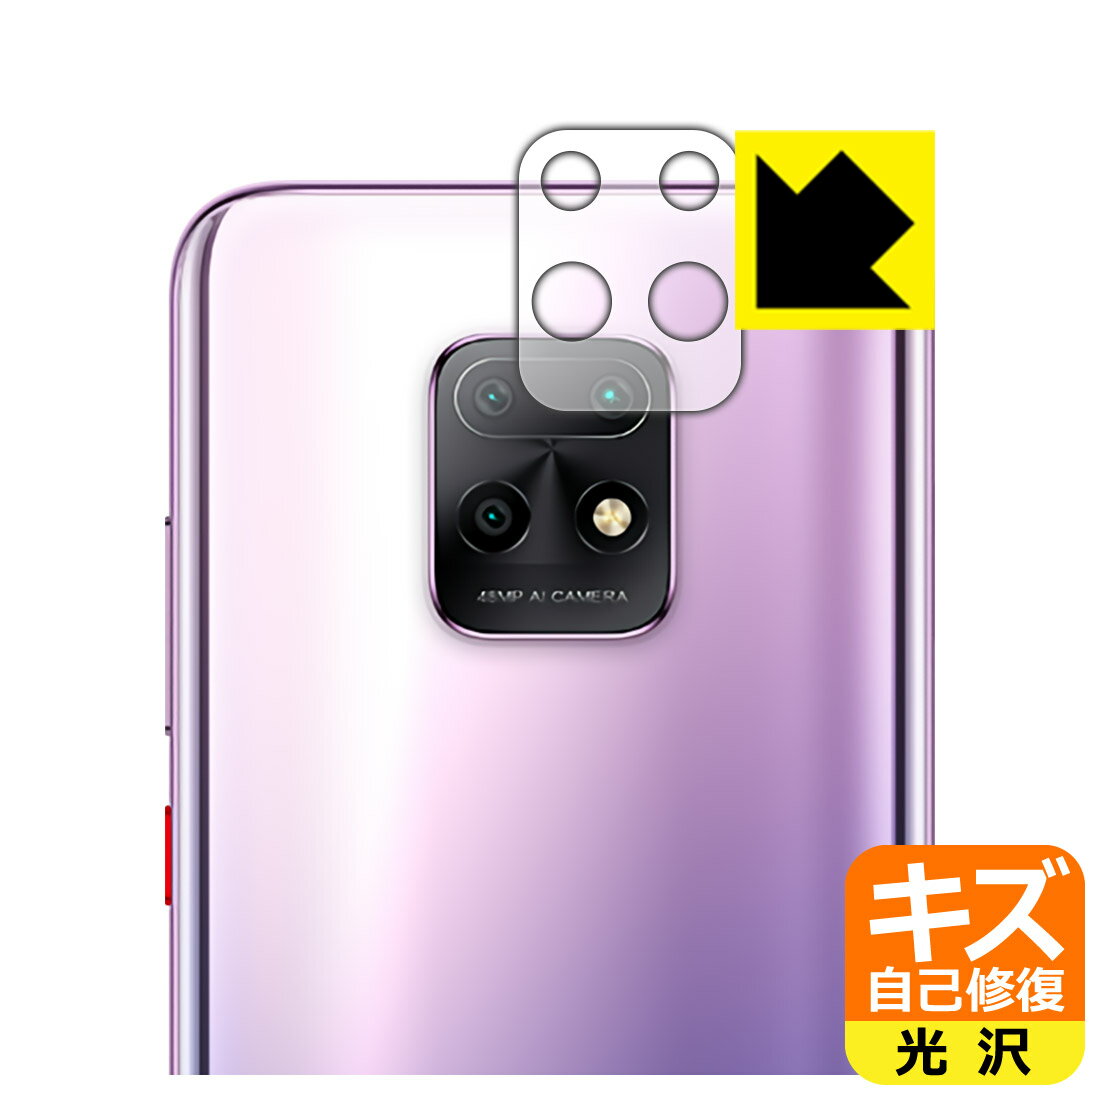 キズ自己修復保護フィルム Xiaomi Redmi 10X 5G (レンズ周辺部用) 日本製 自社製造直販 1